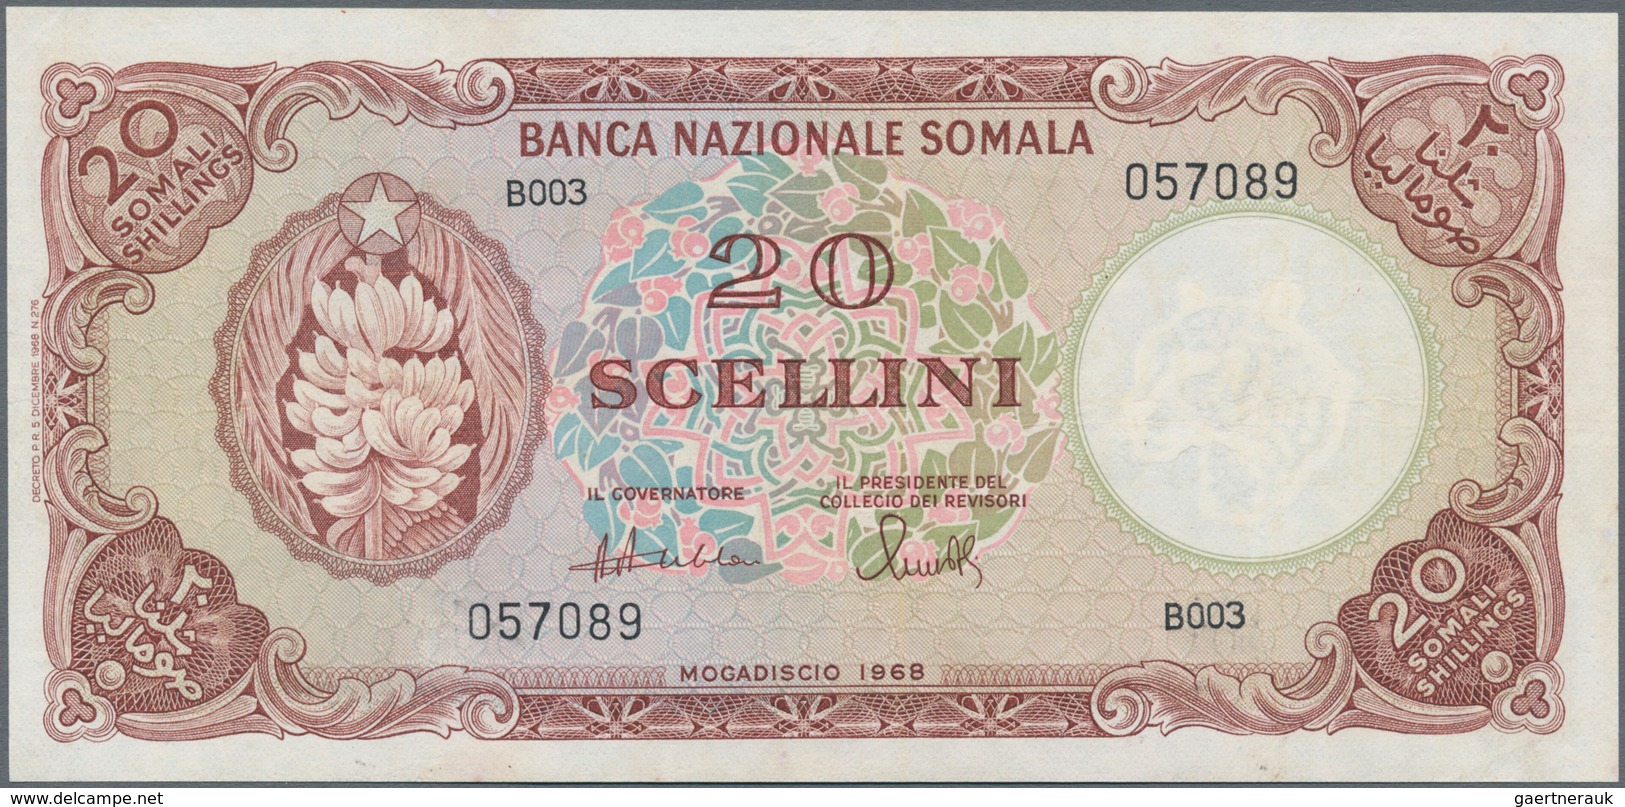 Somalia: Banca Nazionale Somala 20 Scellini 1968, P.11, Still Nice Condition With A Few Minor Spots - Somalia